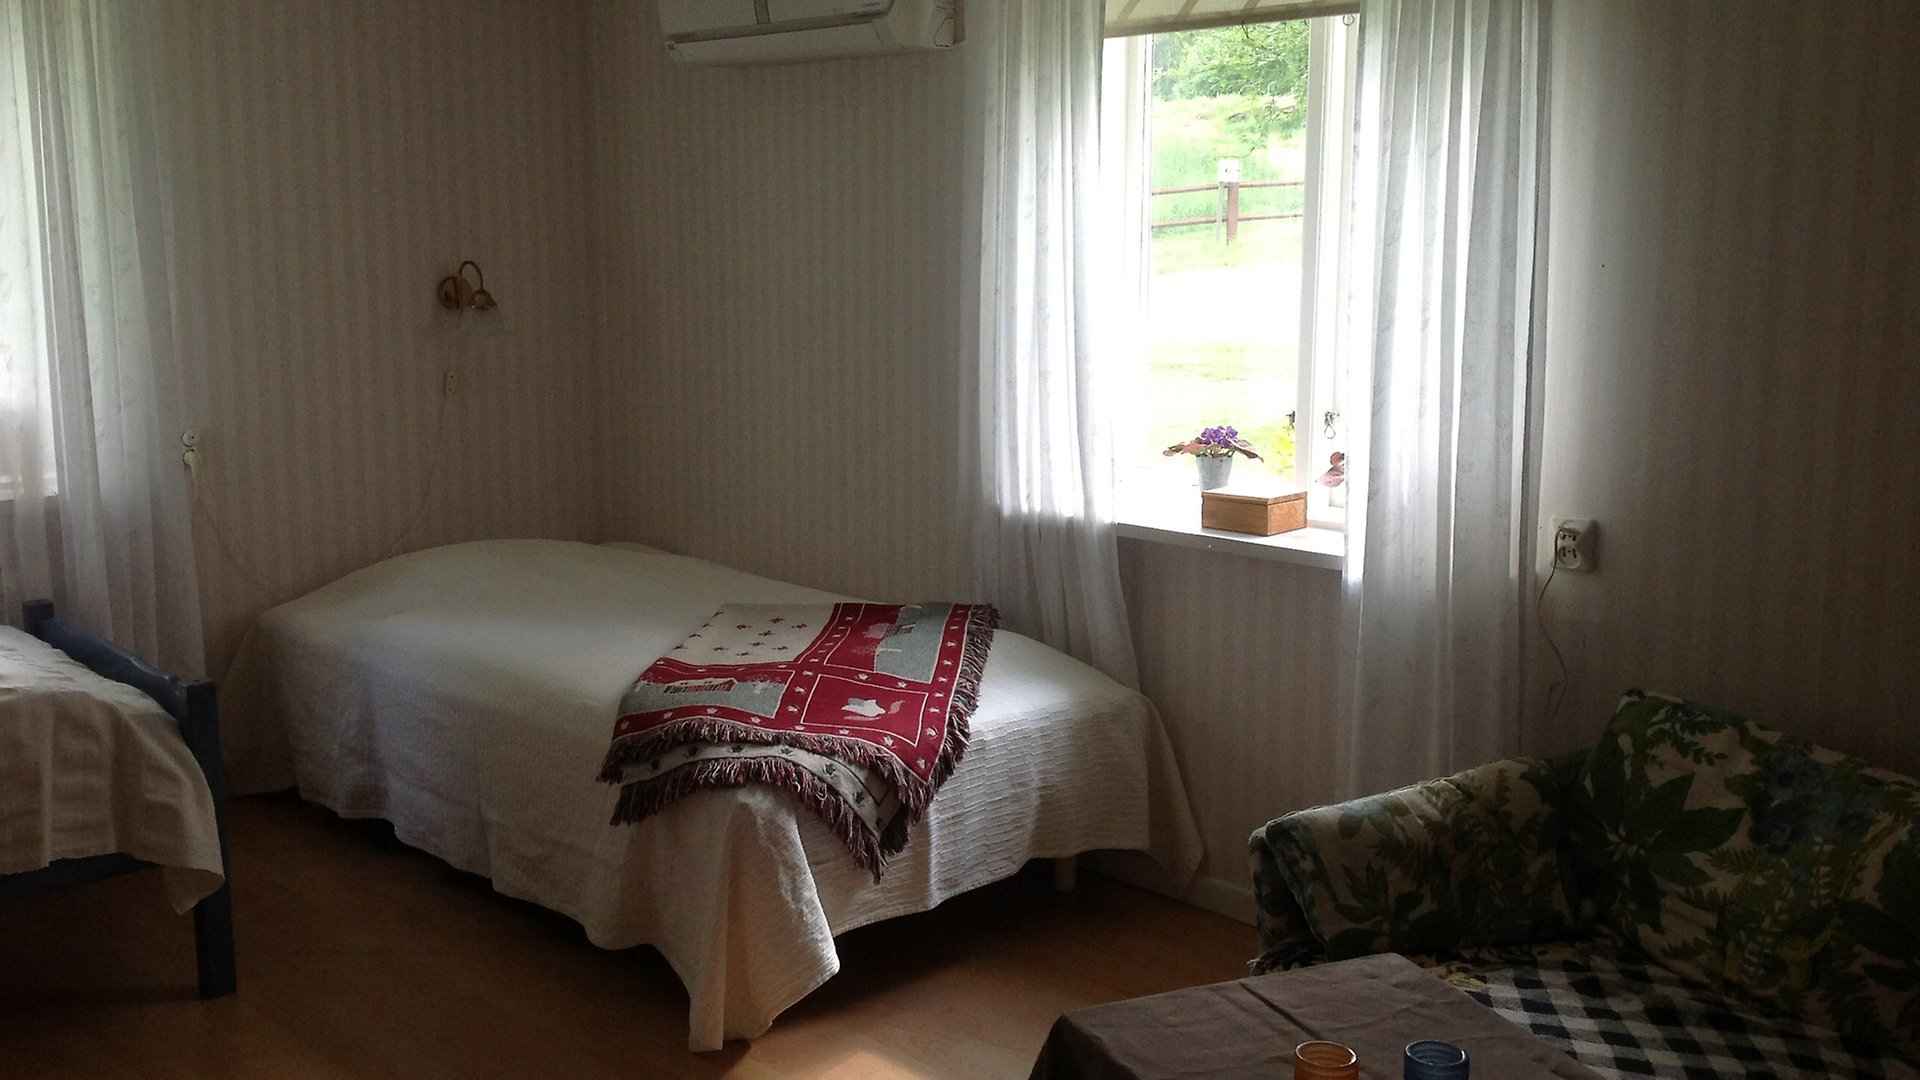 En säng i ett hörn av ett rum med ett fönster på båda väggarna. Sängen är bäddad med vitt överkast och en röd filt. I utkanten av bilden finns hörnet av en soffa. 